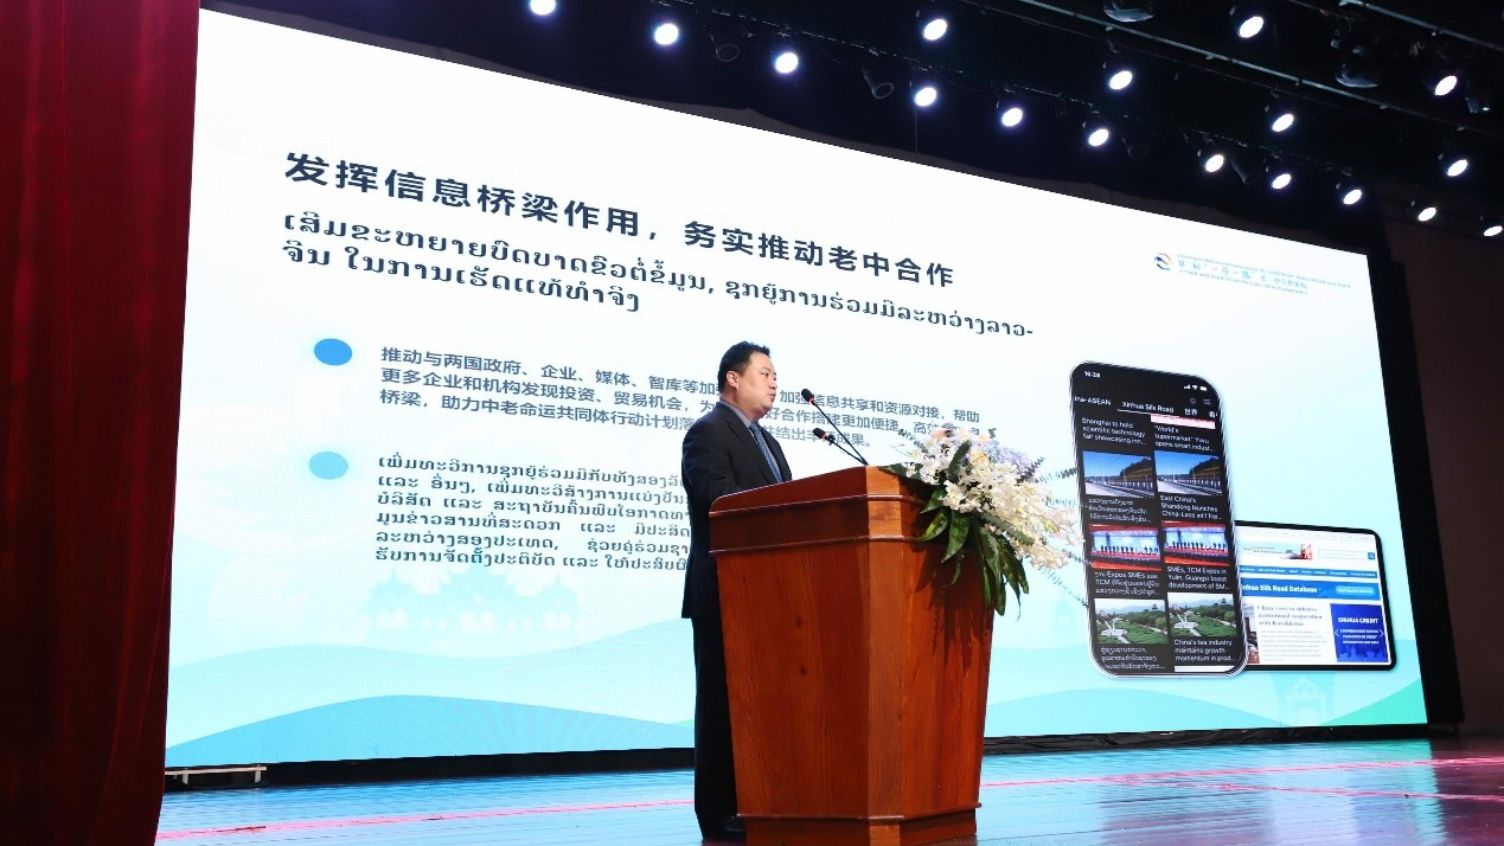 老挝中华时报社长吴兴华在第二届“一带一路”老—中合作论坛上发布“丝路直通车”双语信息专栏